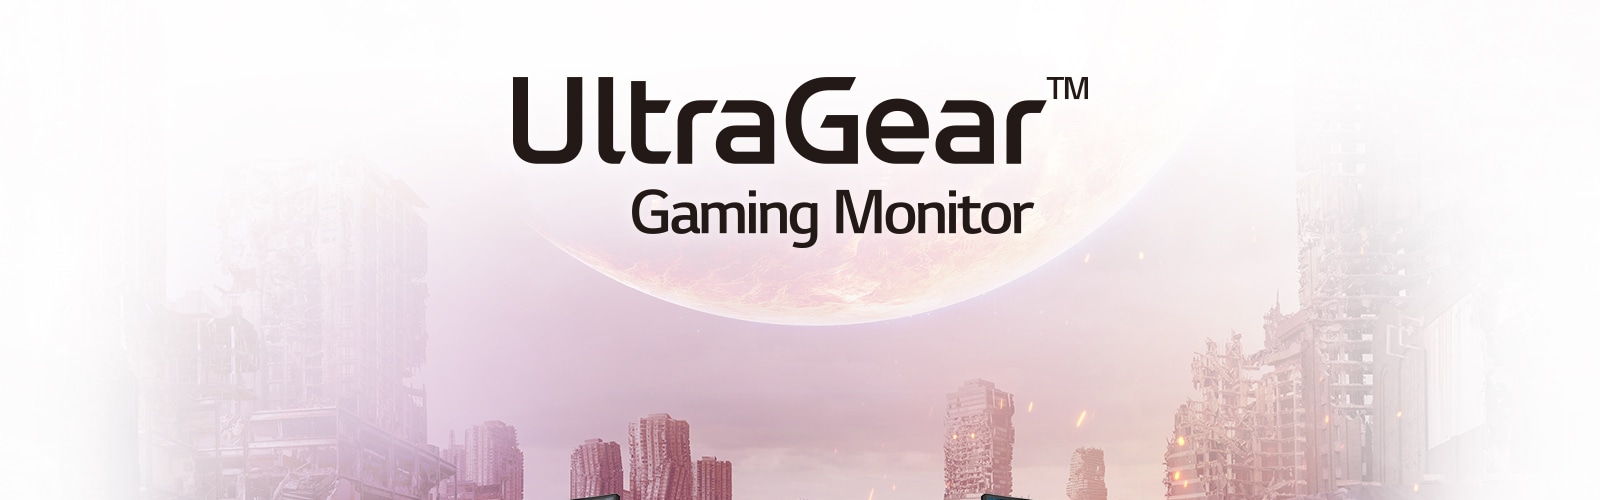 MNT-UltraGear-2019-12-1-Product-Line-Up-Desktop